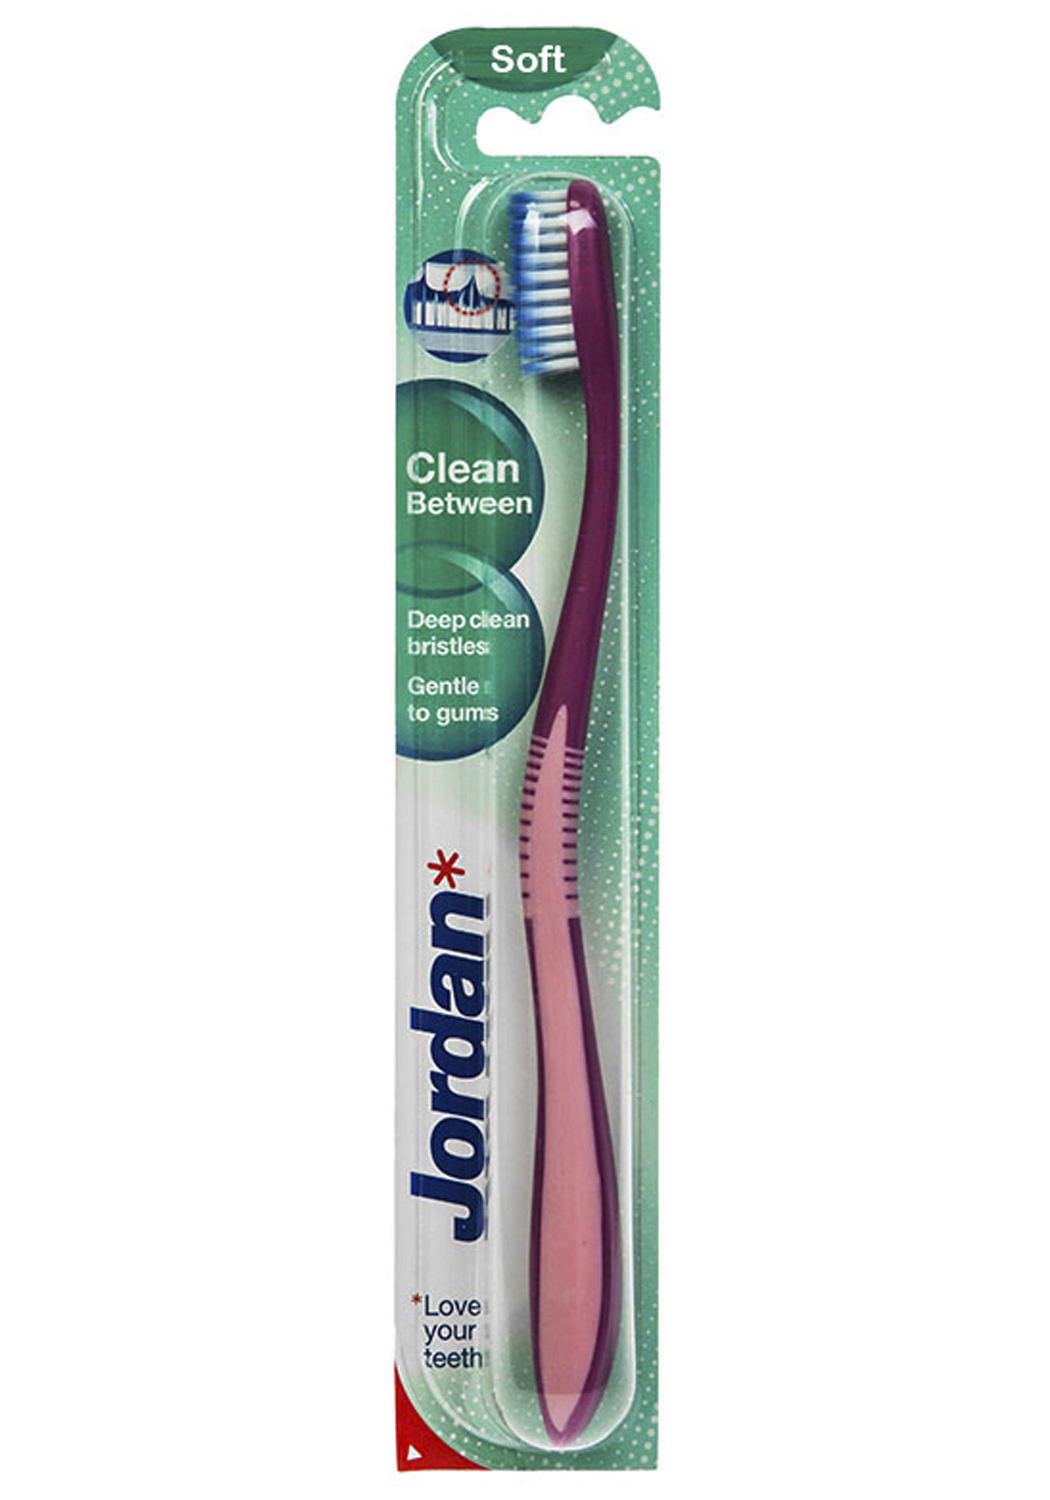 Купить зубную щетку jordan clean between ирригатор waterpik купить в москве в аптеке